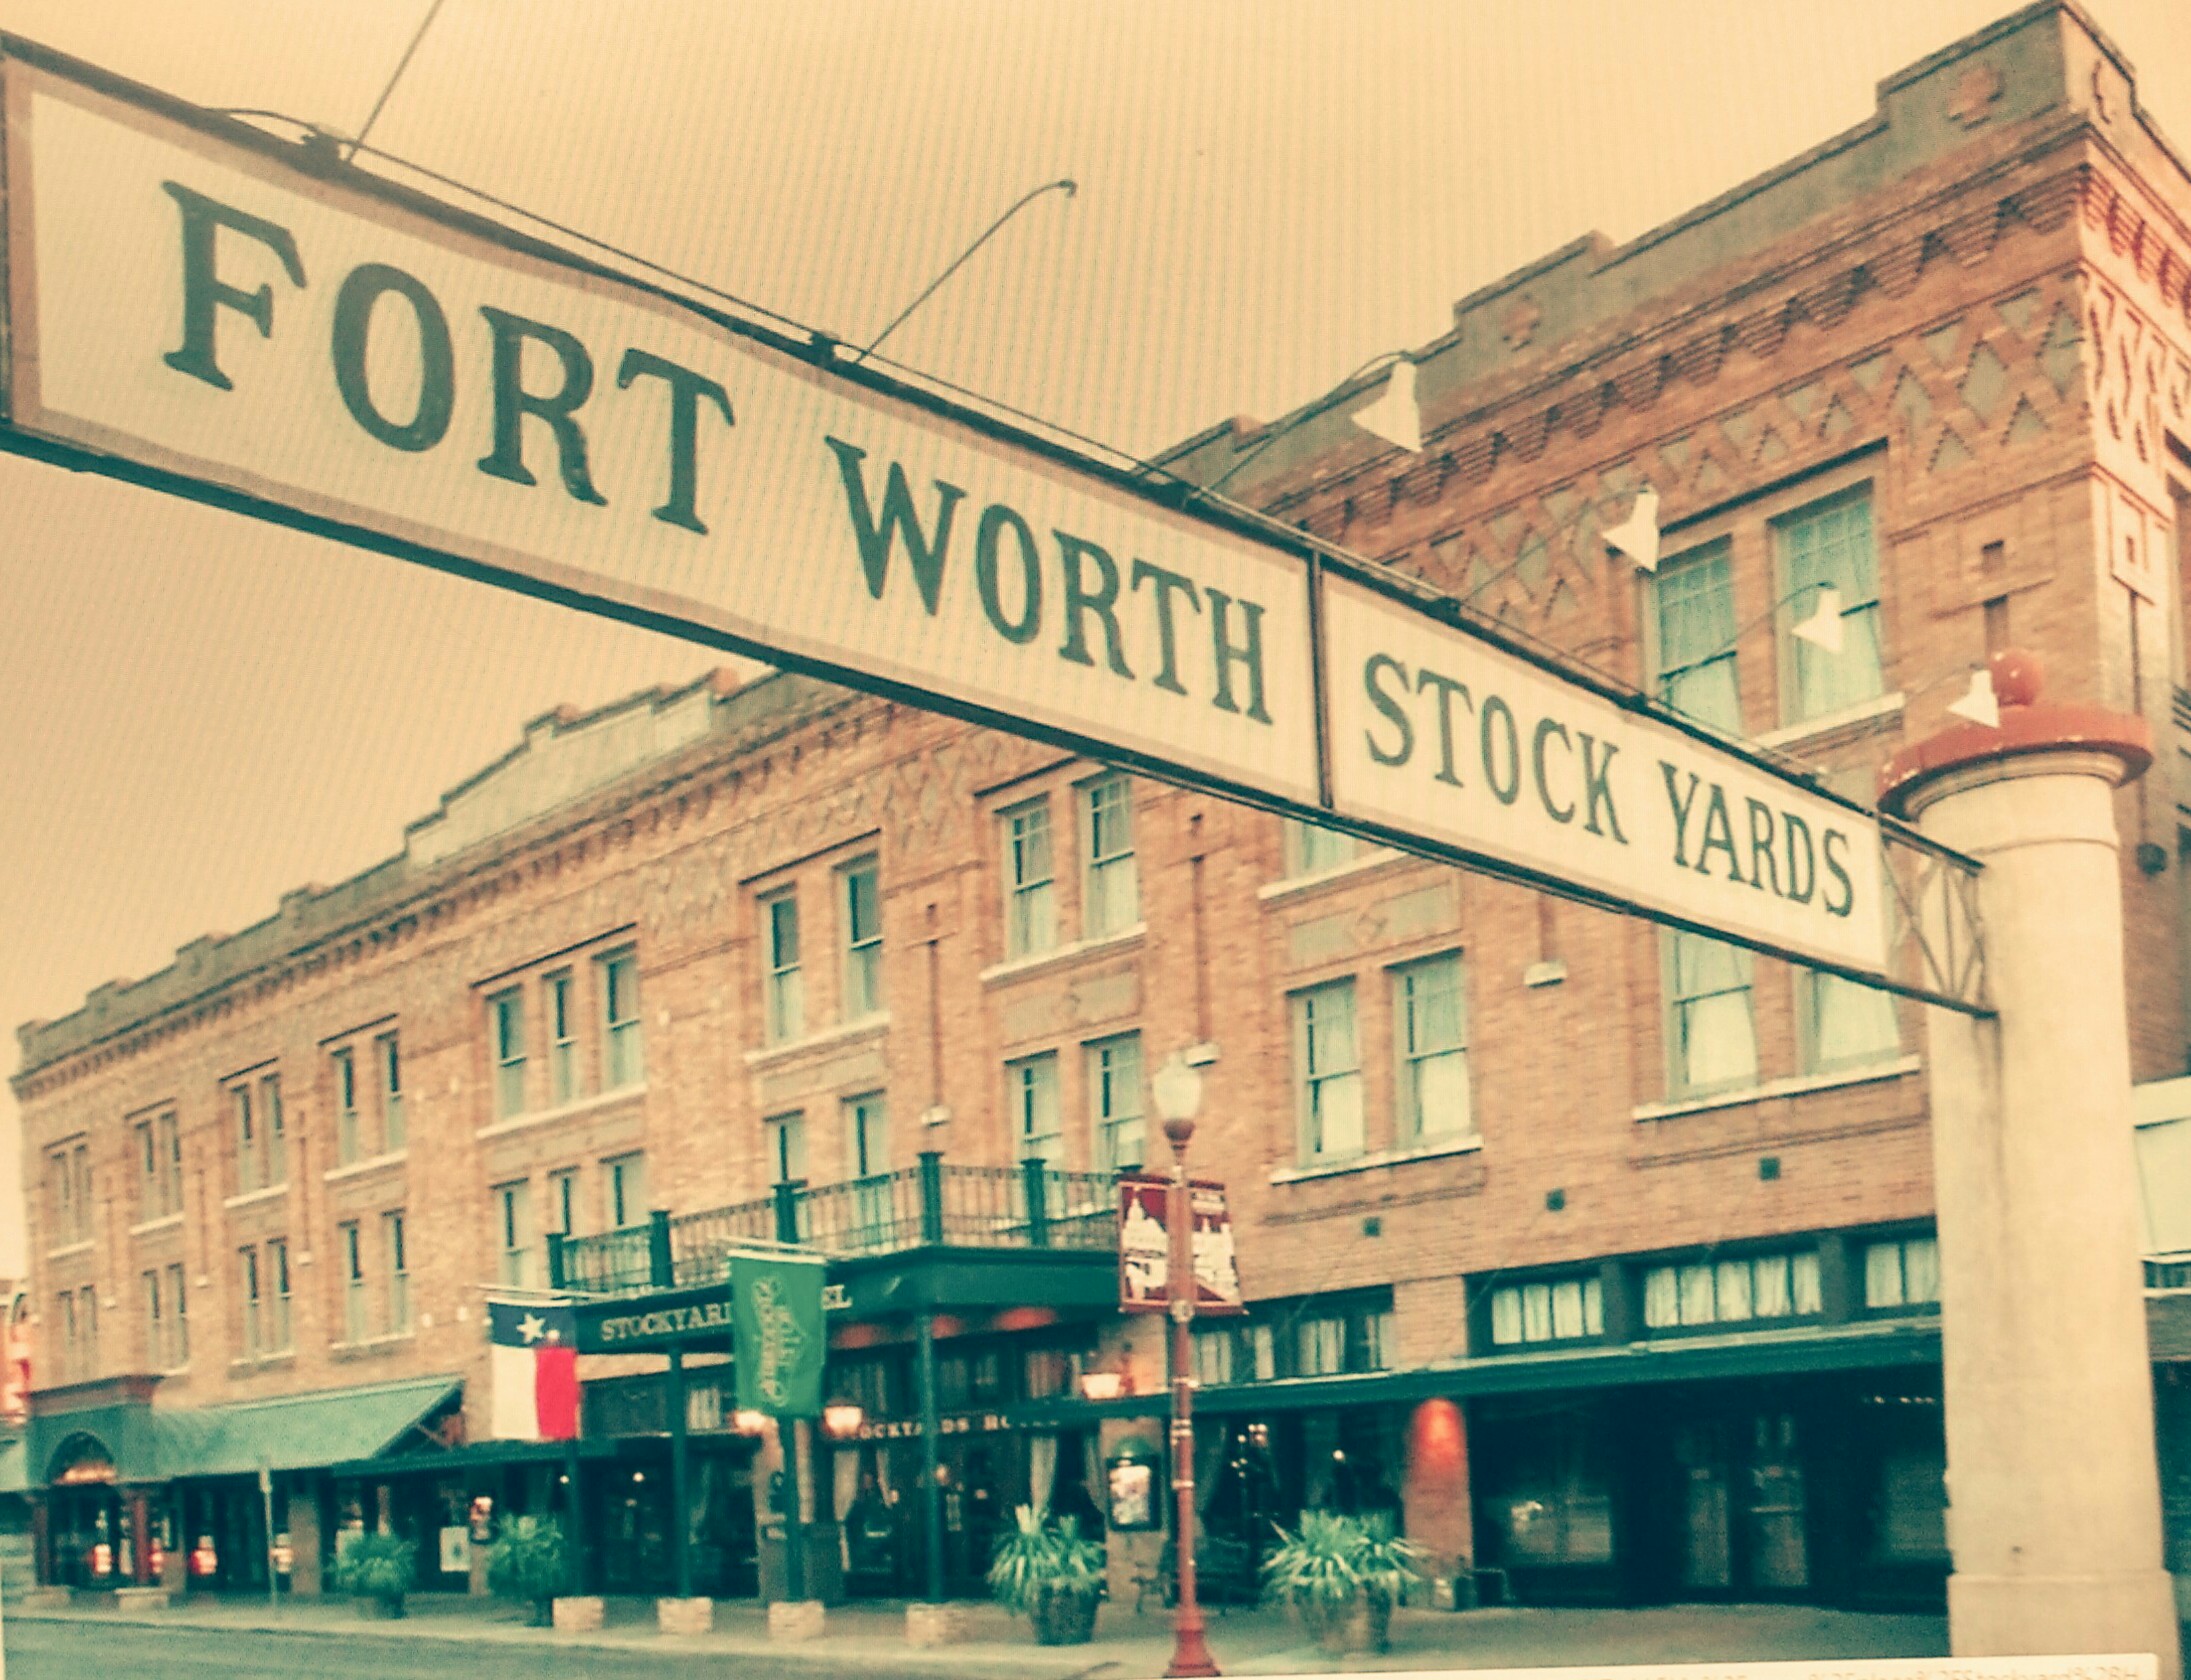 Ft Worth Stockyard Hotel